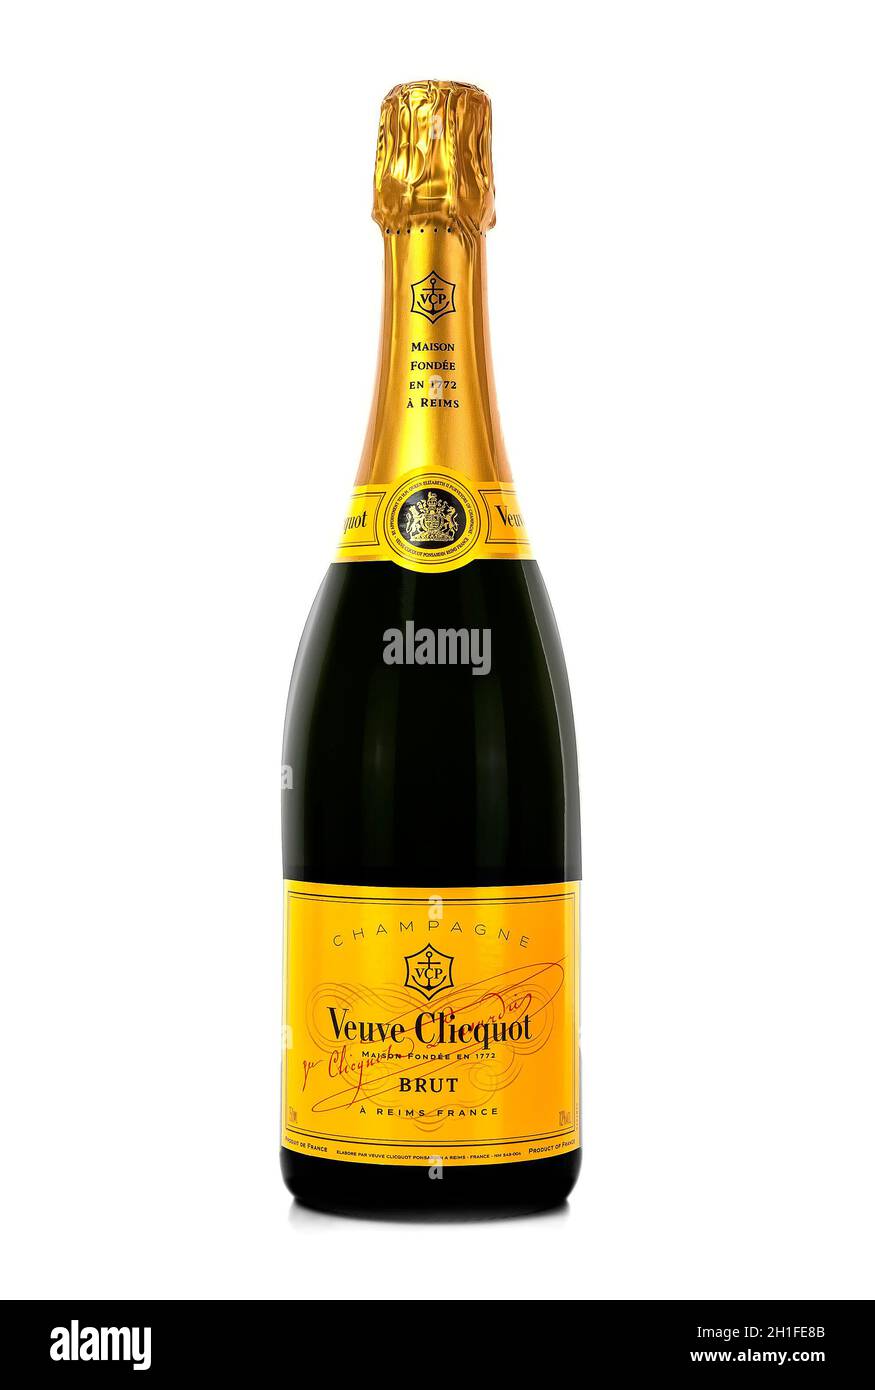 SWINDON, Großbritannien - 2. MAI 2014: Veuve Clicquot Ponsardin Premium Champagner auf weißem Hintergrund, Veuve Clicquot Ponsardin ist ein französischer Champagner Stockfoto